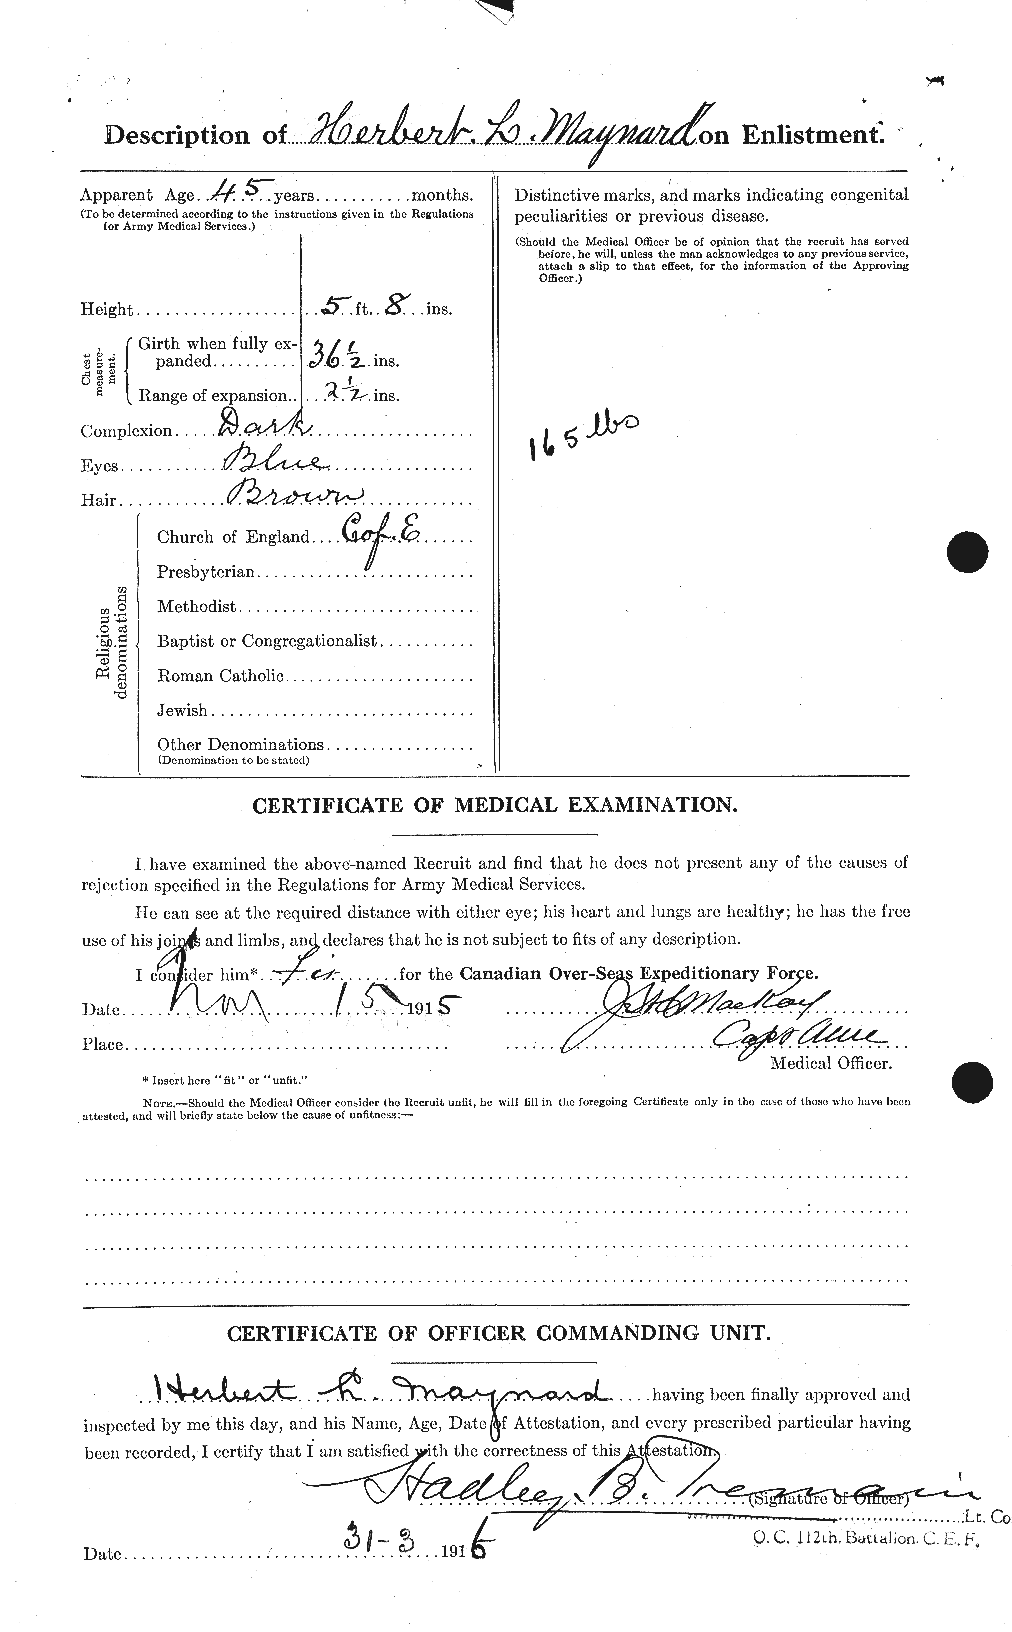 Dossiers du Personnel de la Première Guerre mondiale - CEC 486665b